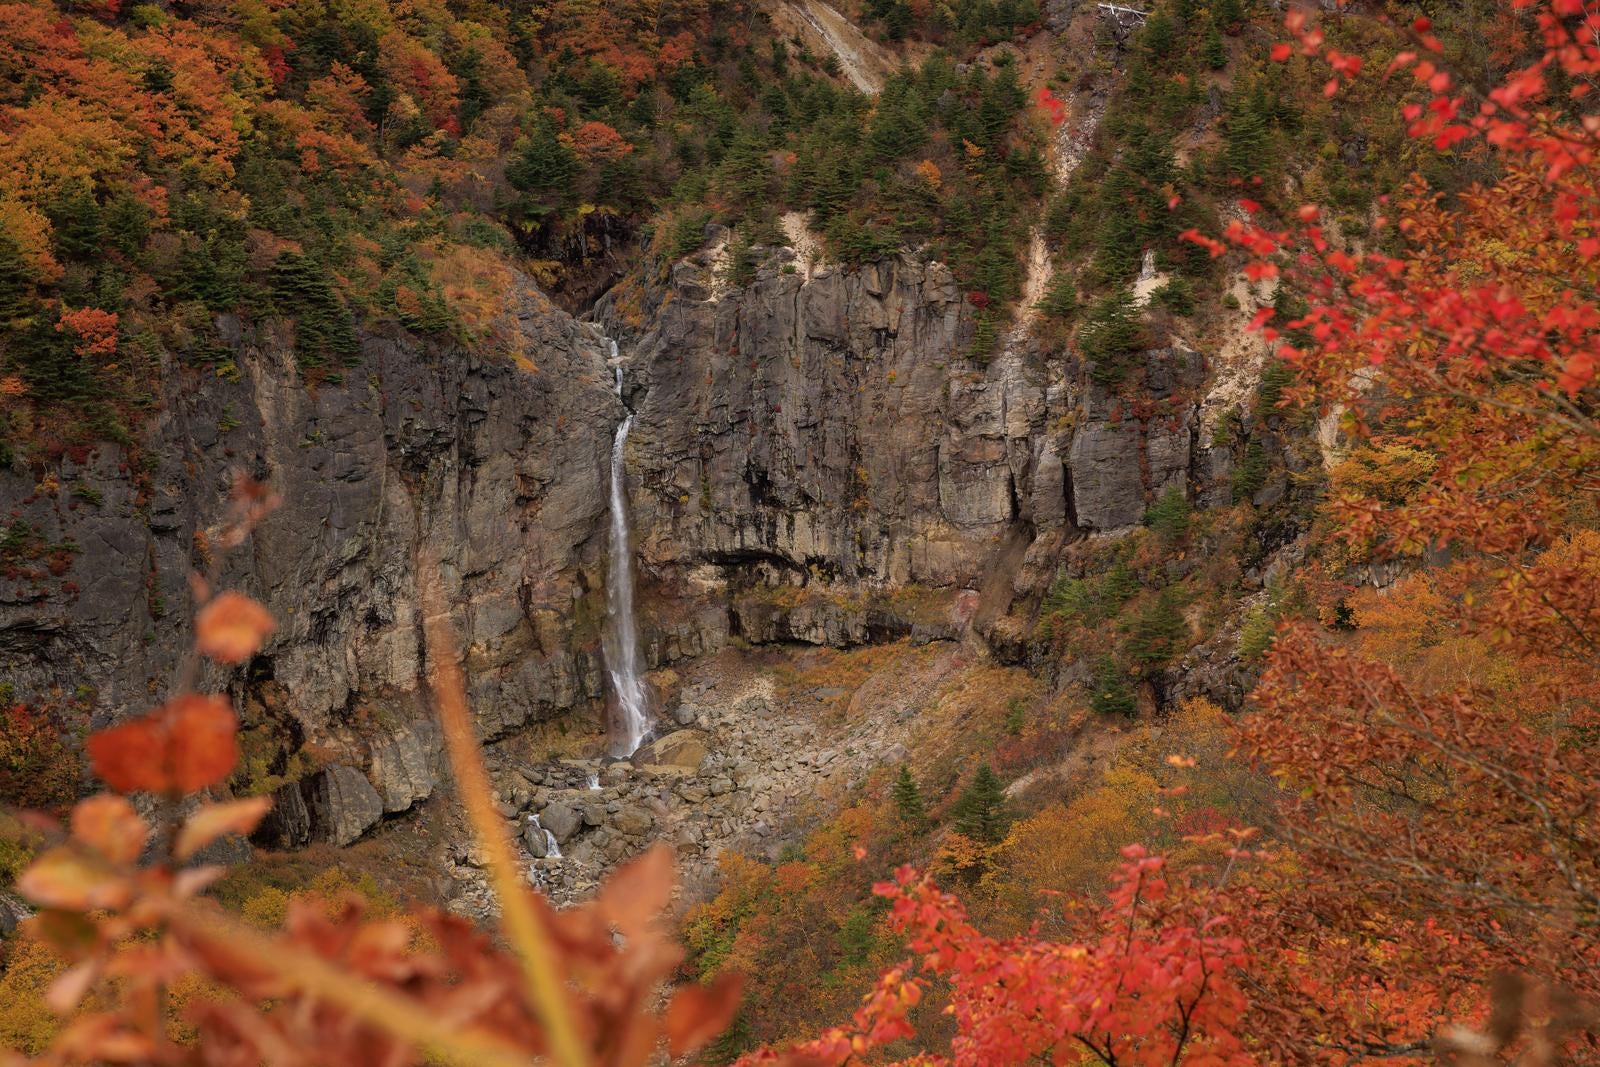 「秋の断壁の壮大な景観と紅葉に彩られた白糸の滝」の写真